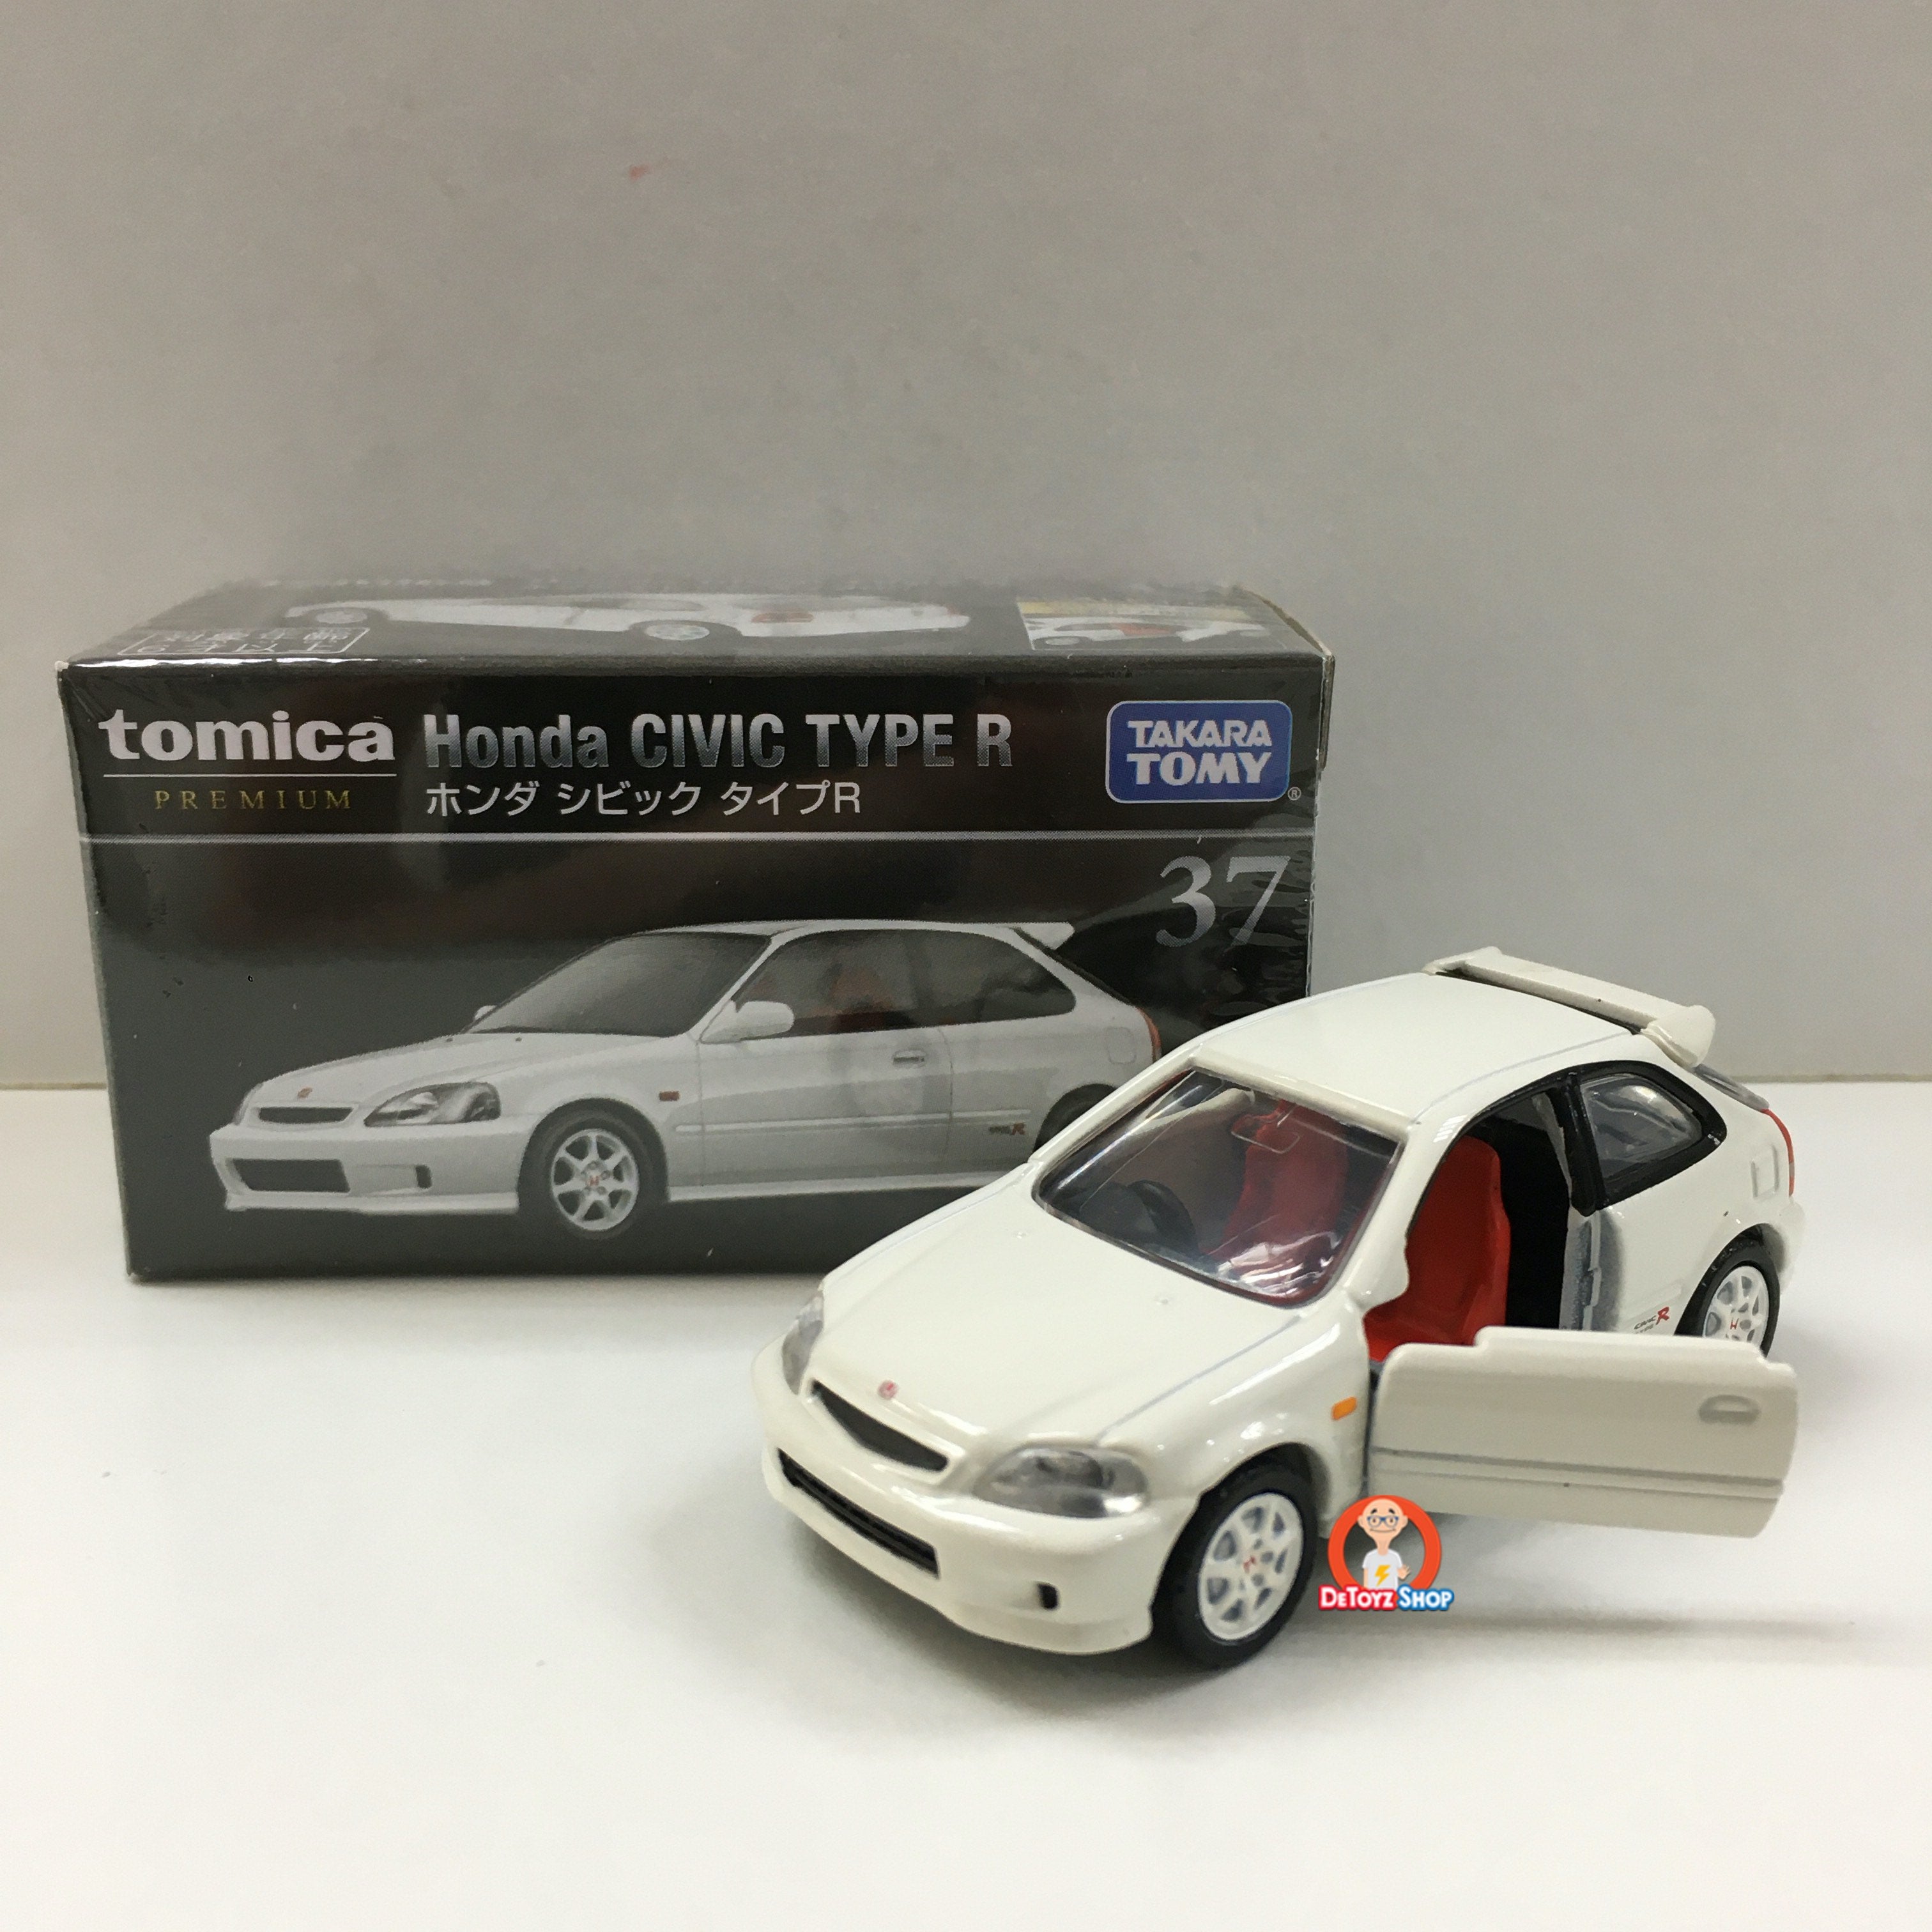 Tomica Premium 37 Honda Civic Type R